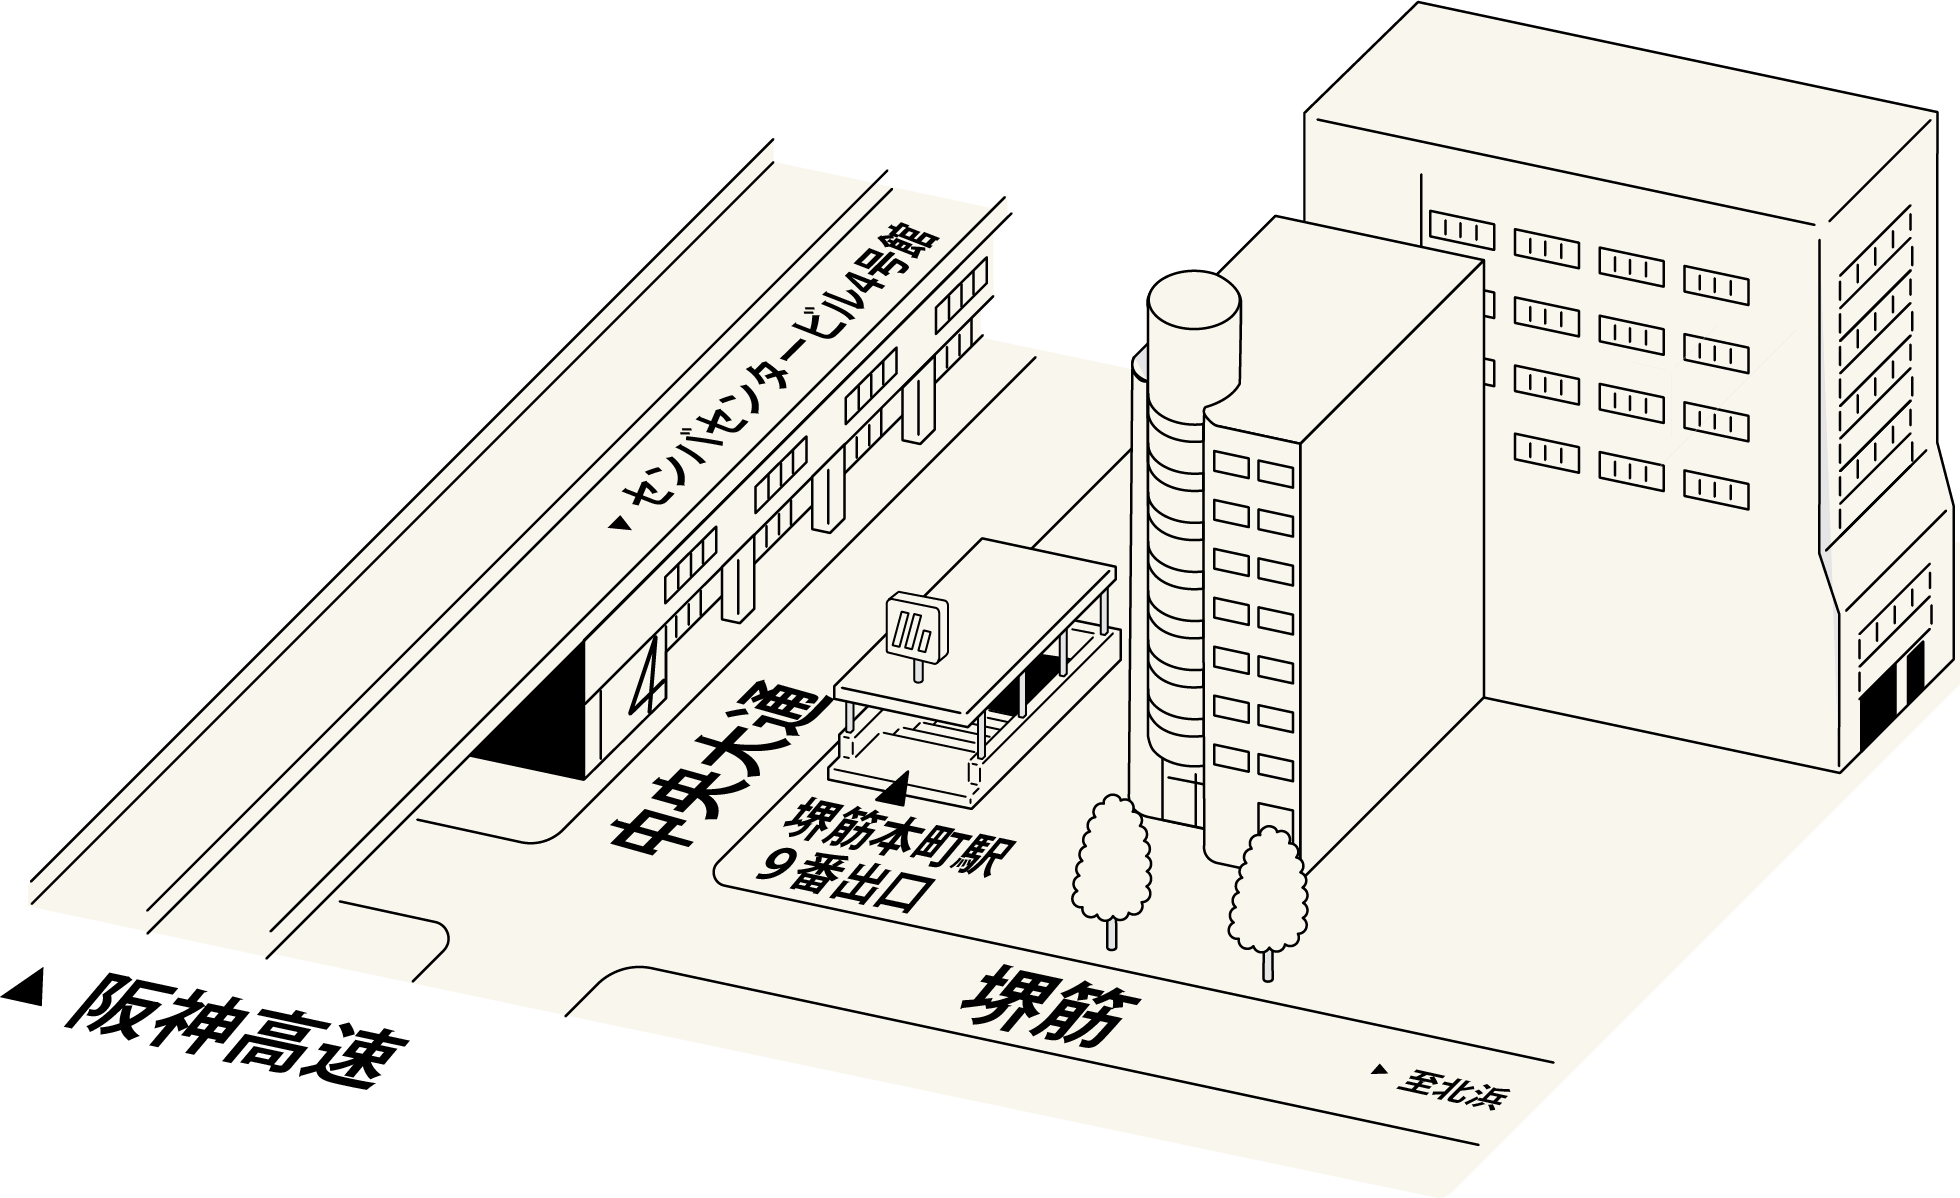 大阪メトロ堺筋本町駅9番出口すぐ、イケマン センバ店のとなり堺筋ビル8F